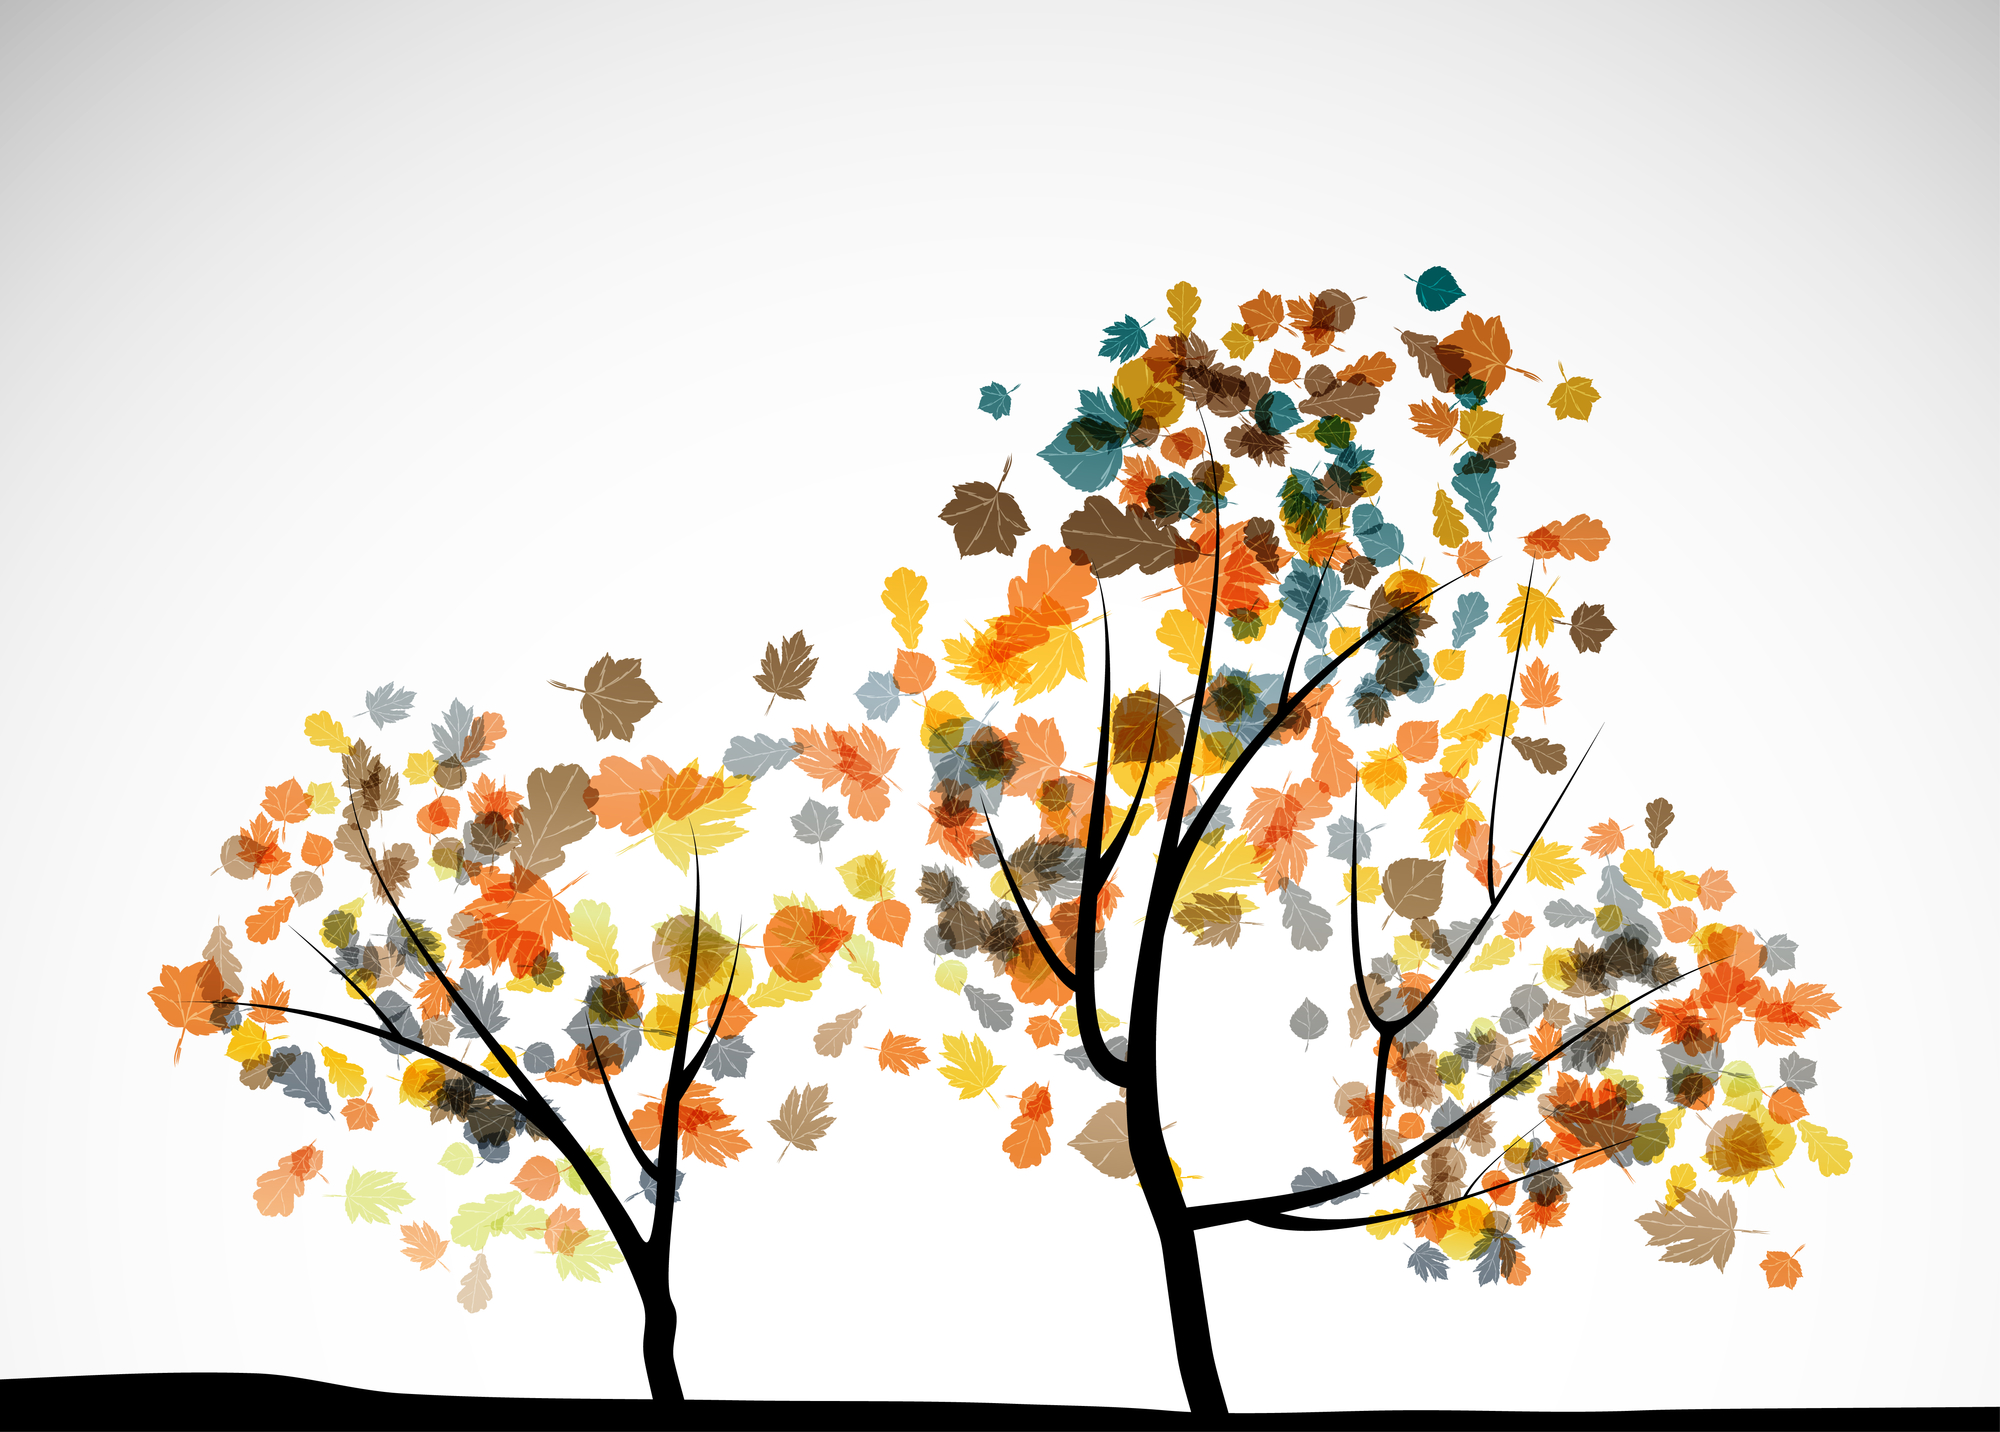 Abstract autumn trees